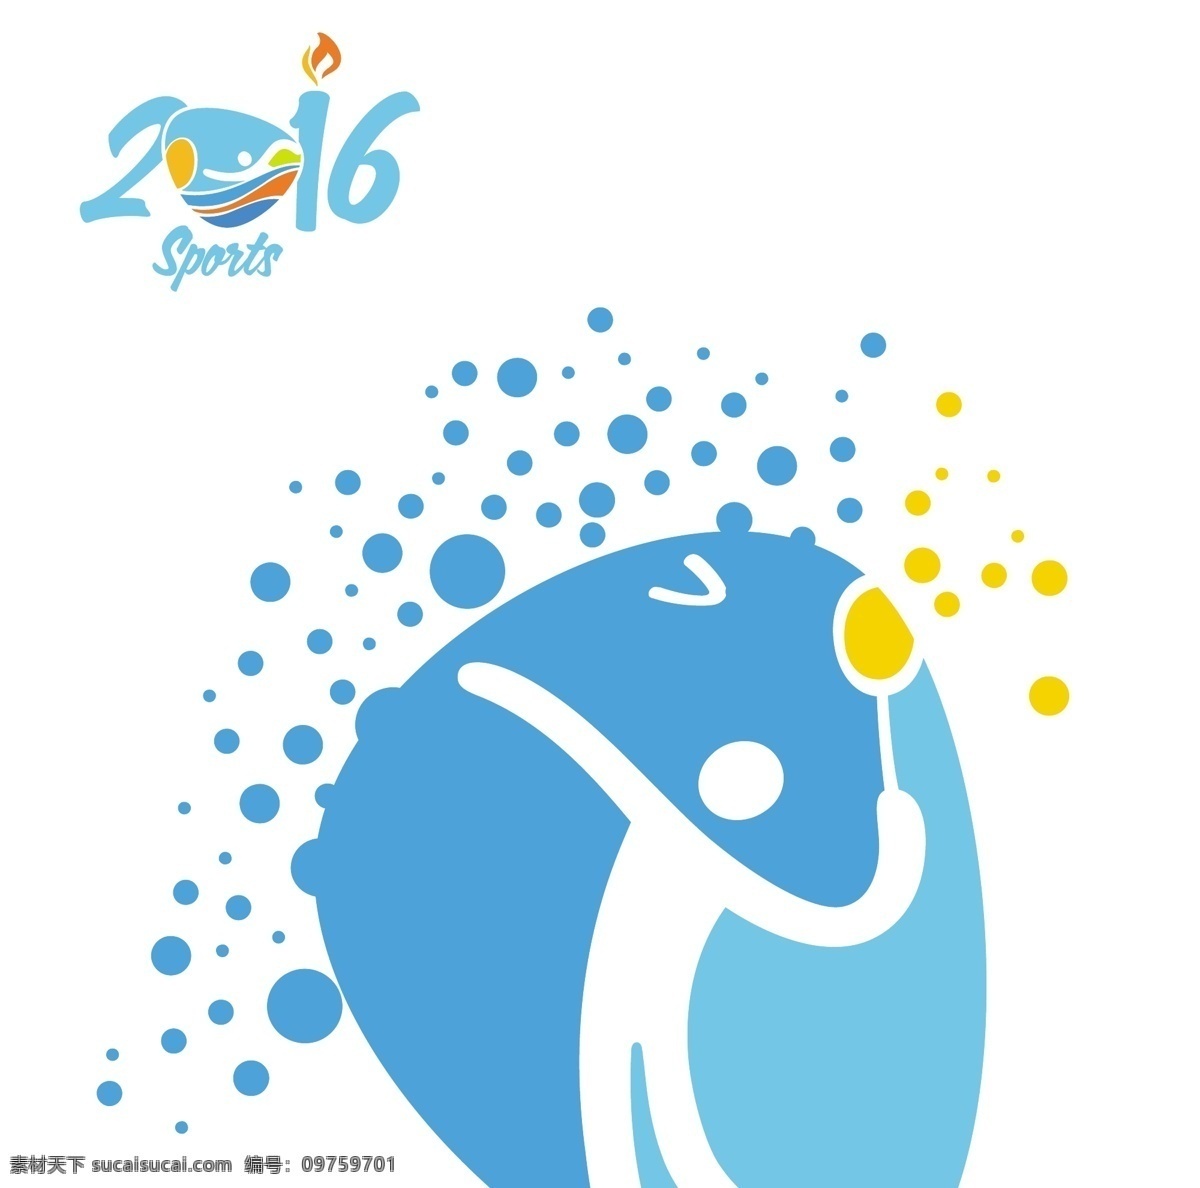 羽毛球 里约 奥运会 图标 摘要 体育 男子 健身 健康 标志 赛事 2016 运动 训练 巴西 比赛 生活方式 国际 运动员 锻炼